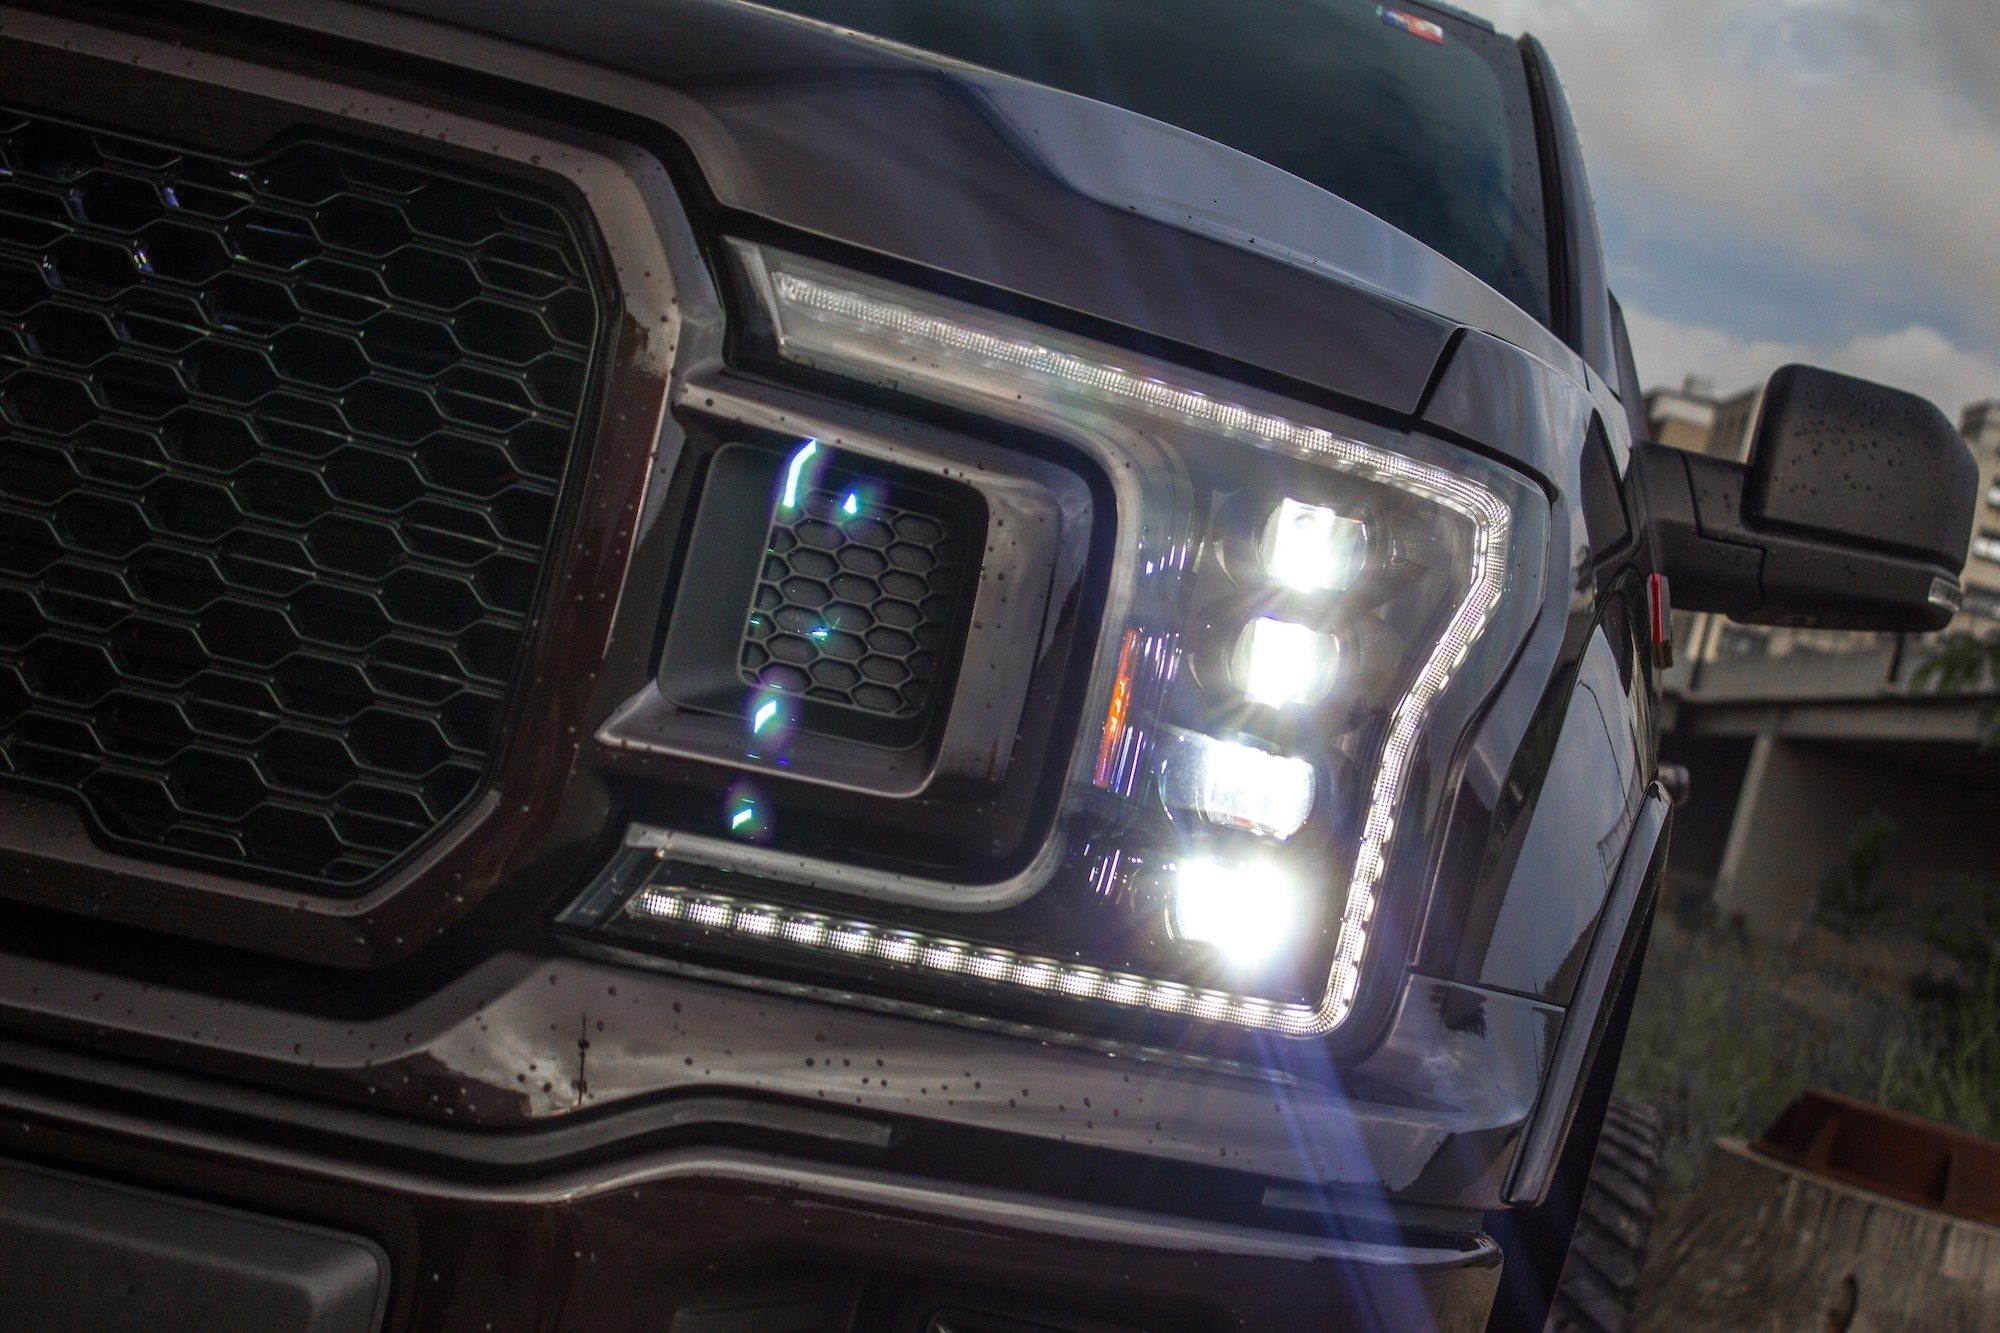 led headlights for trucks